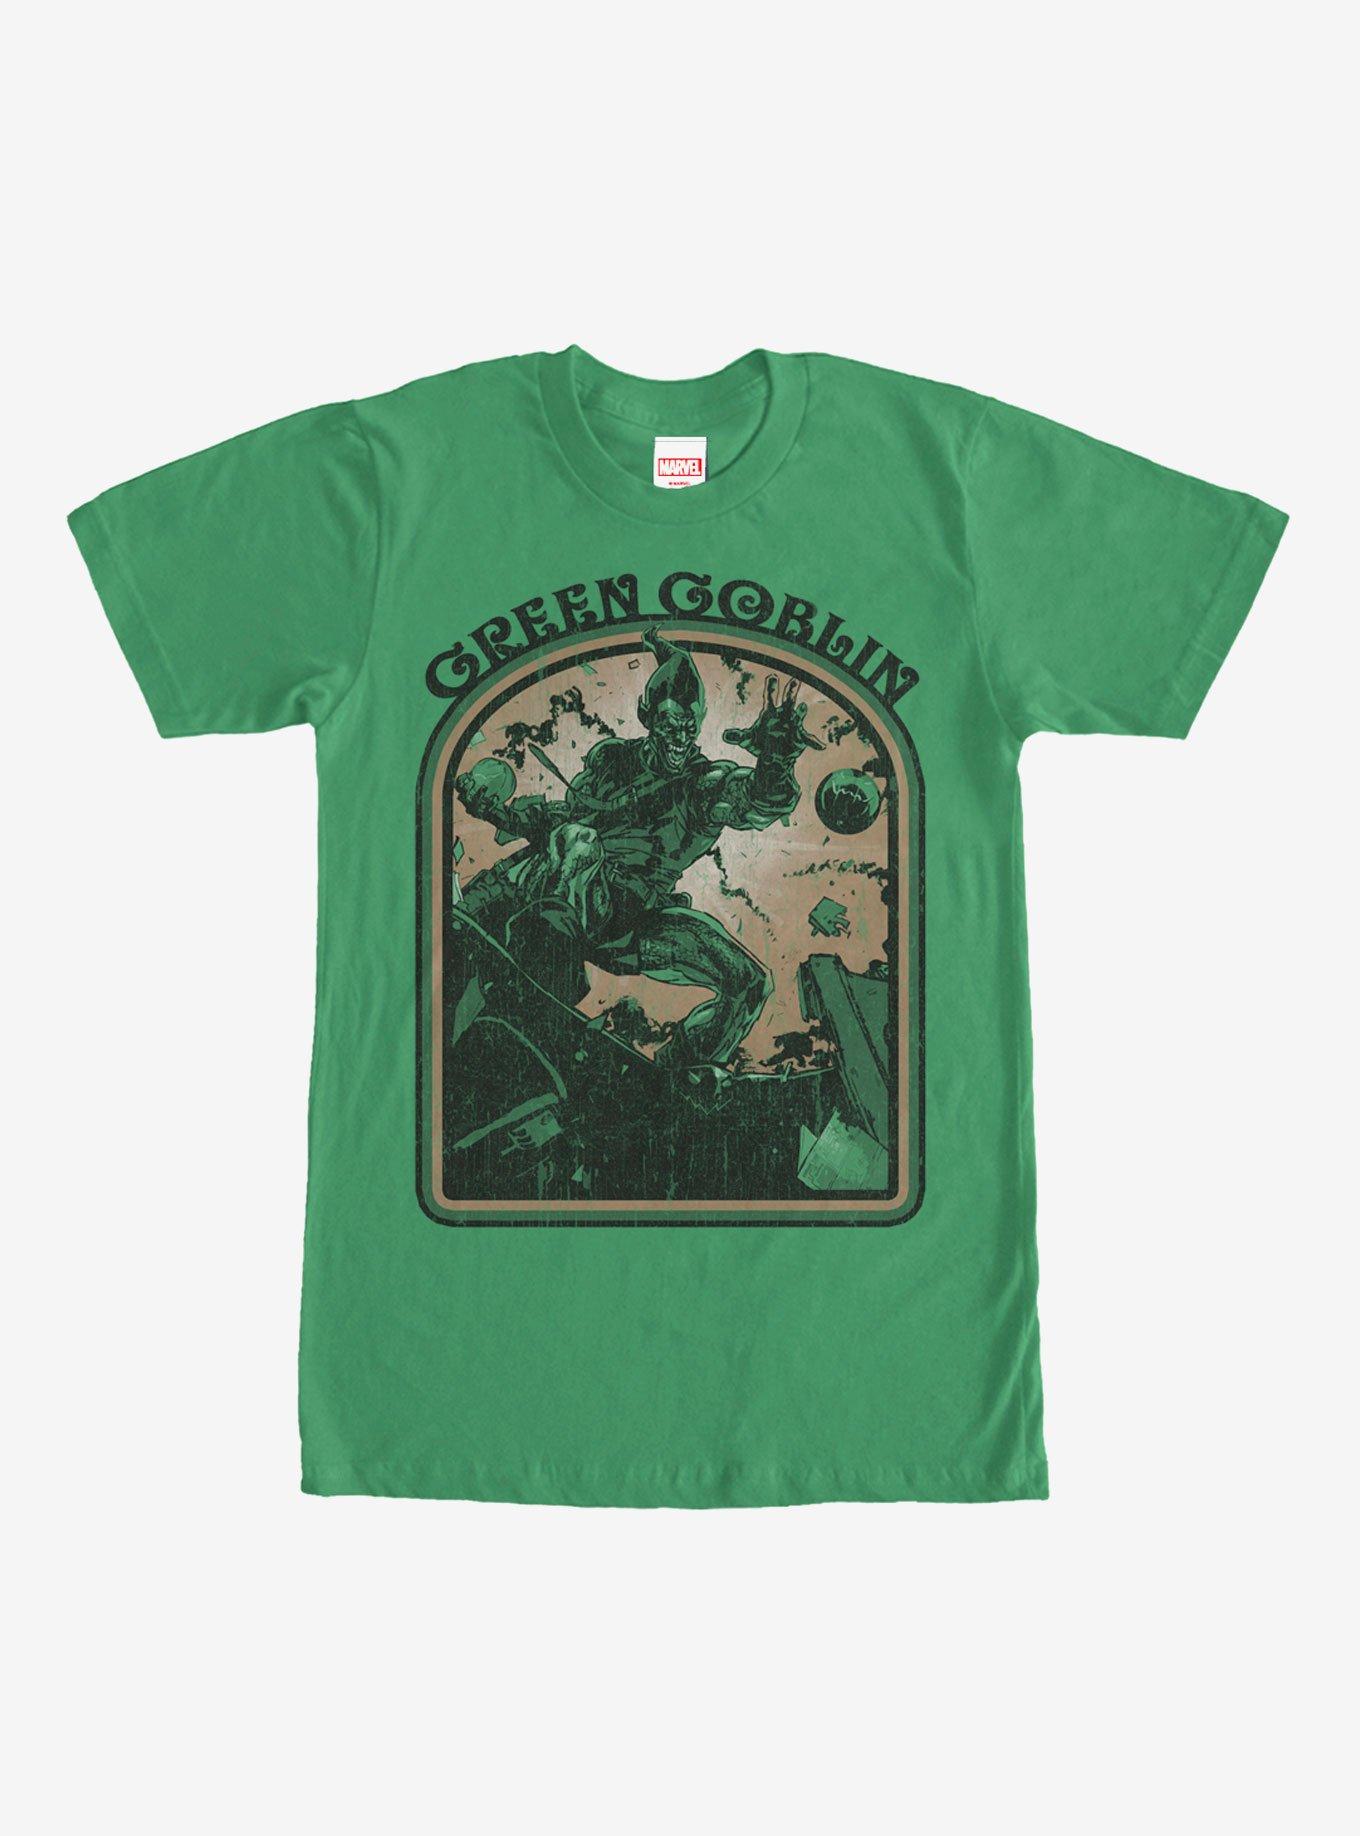 Marvel Green Goblin T-Shirt, KELLY, hi-res